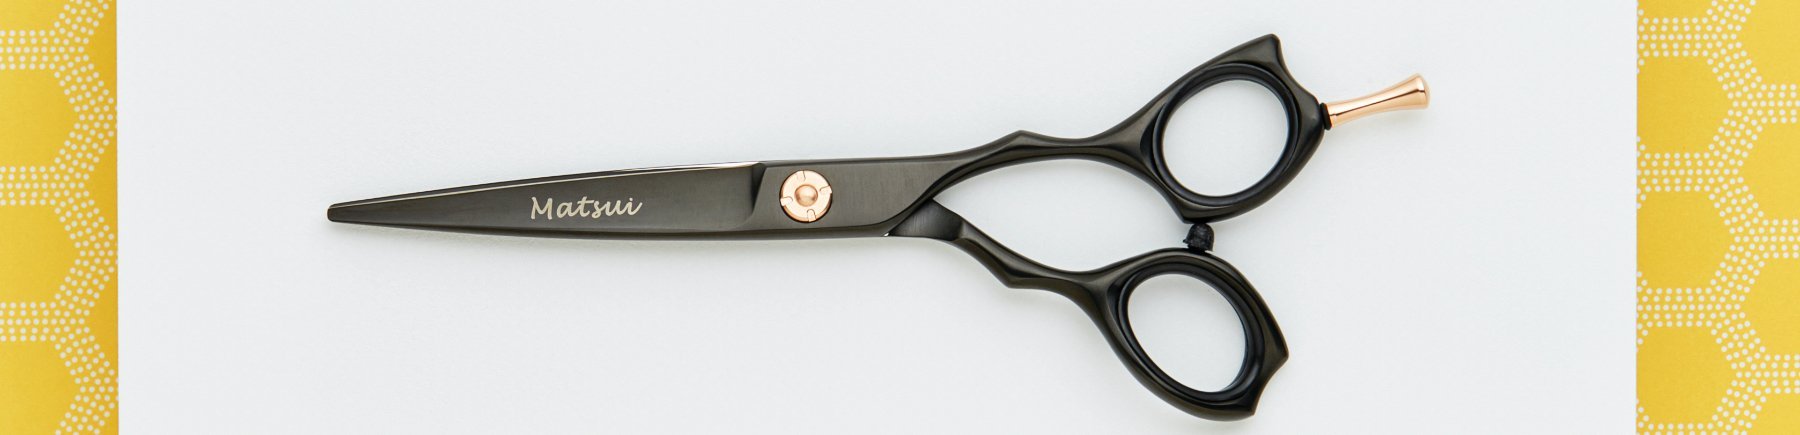 Black Hairdressing Scissors.